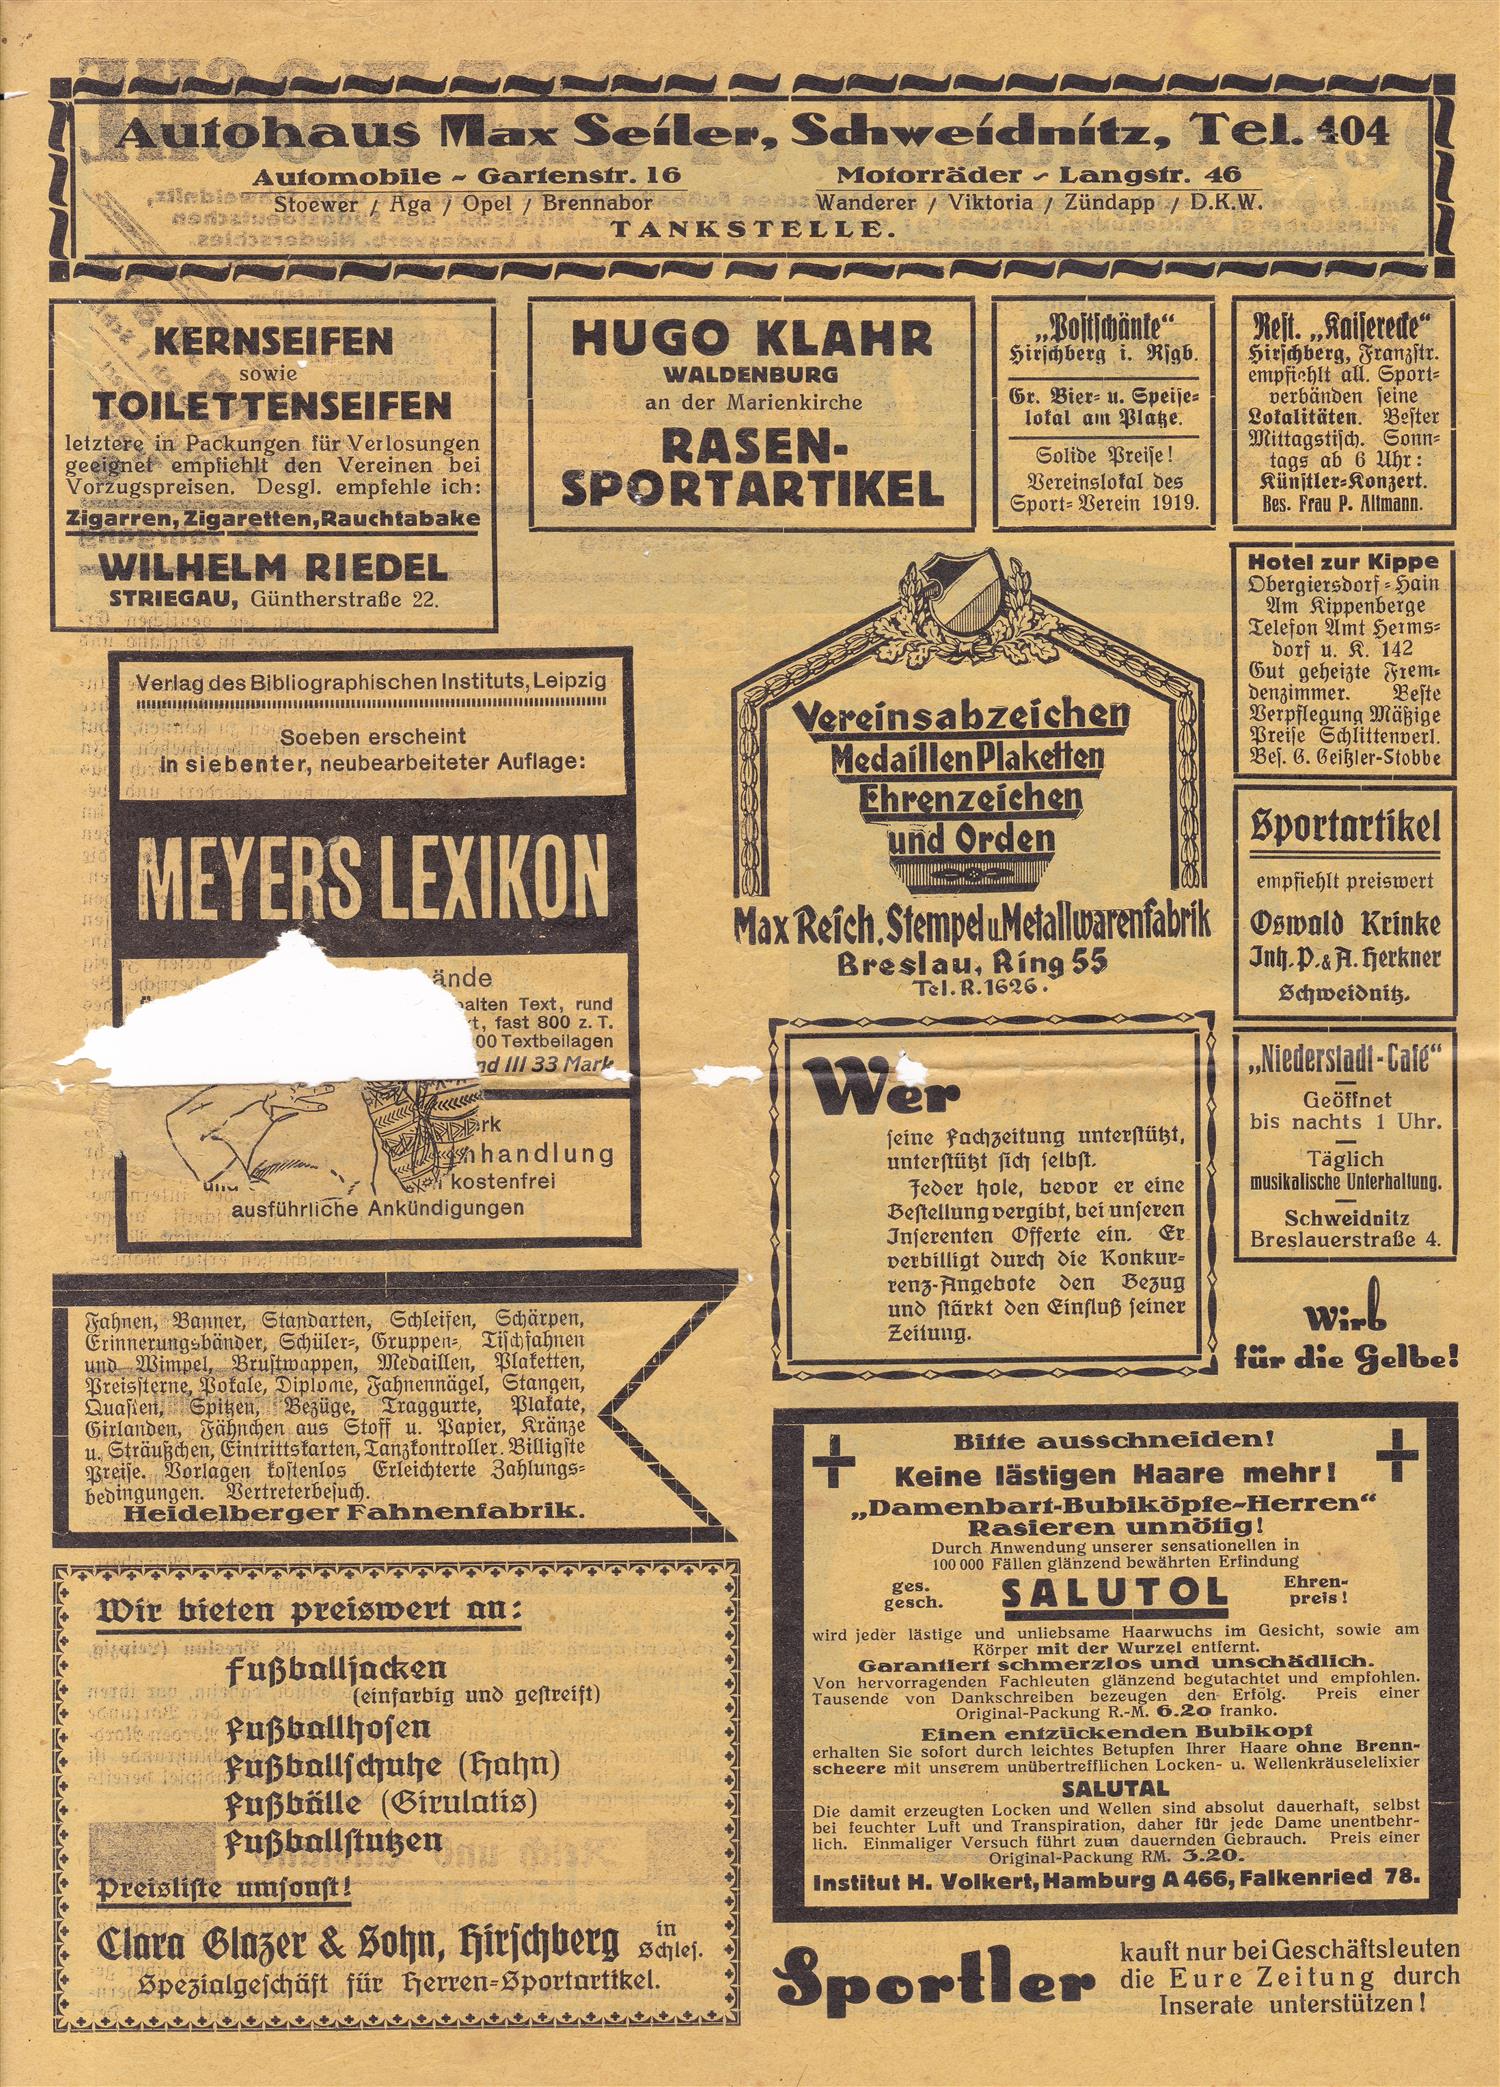 Schlesiche Sport Woche 26 05 1926 (1)